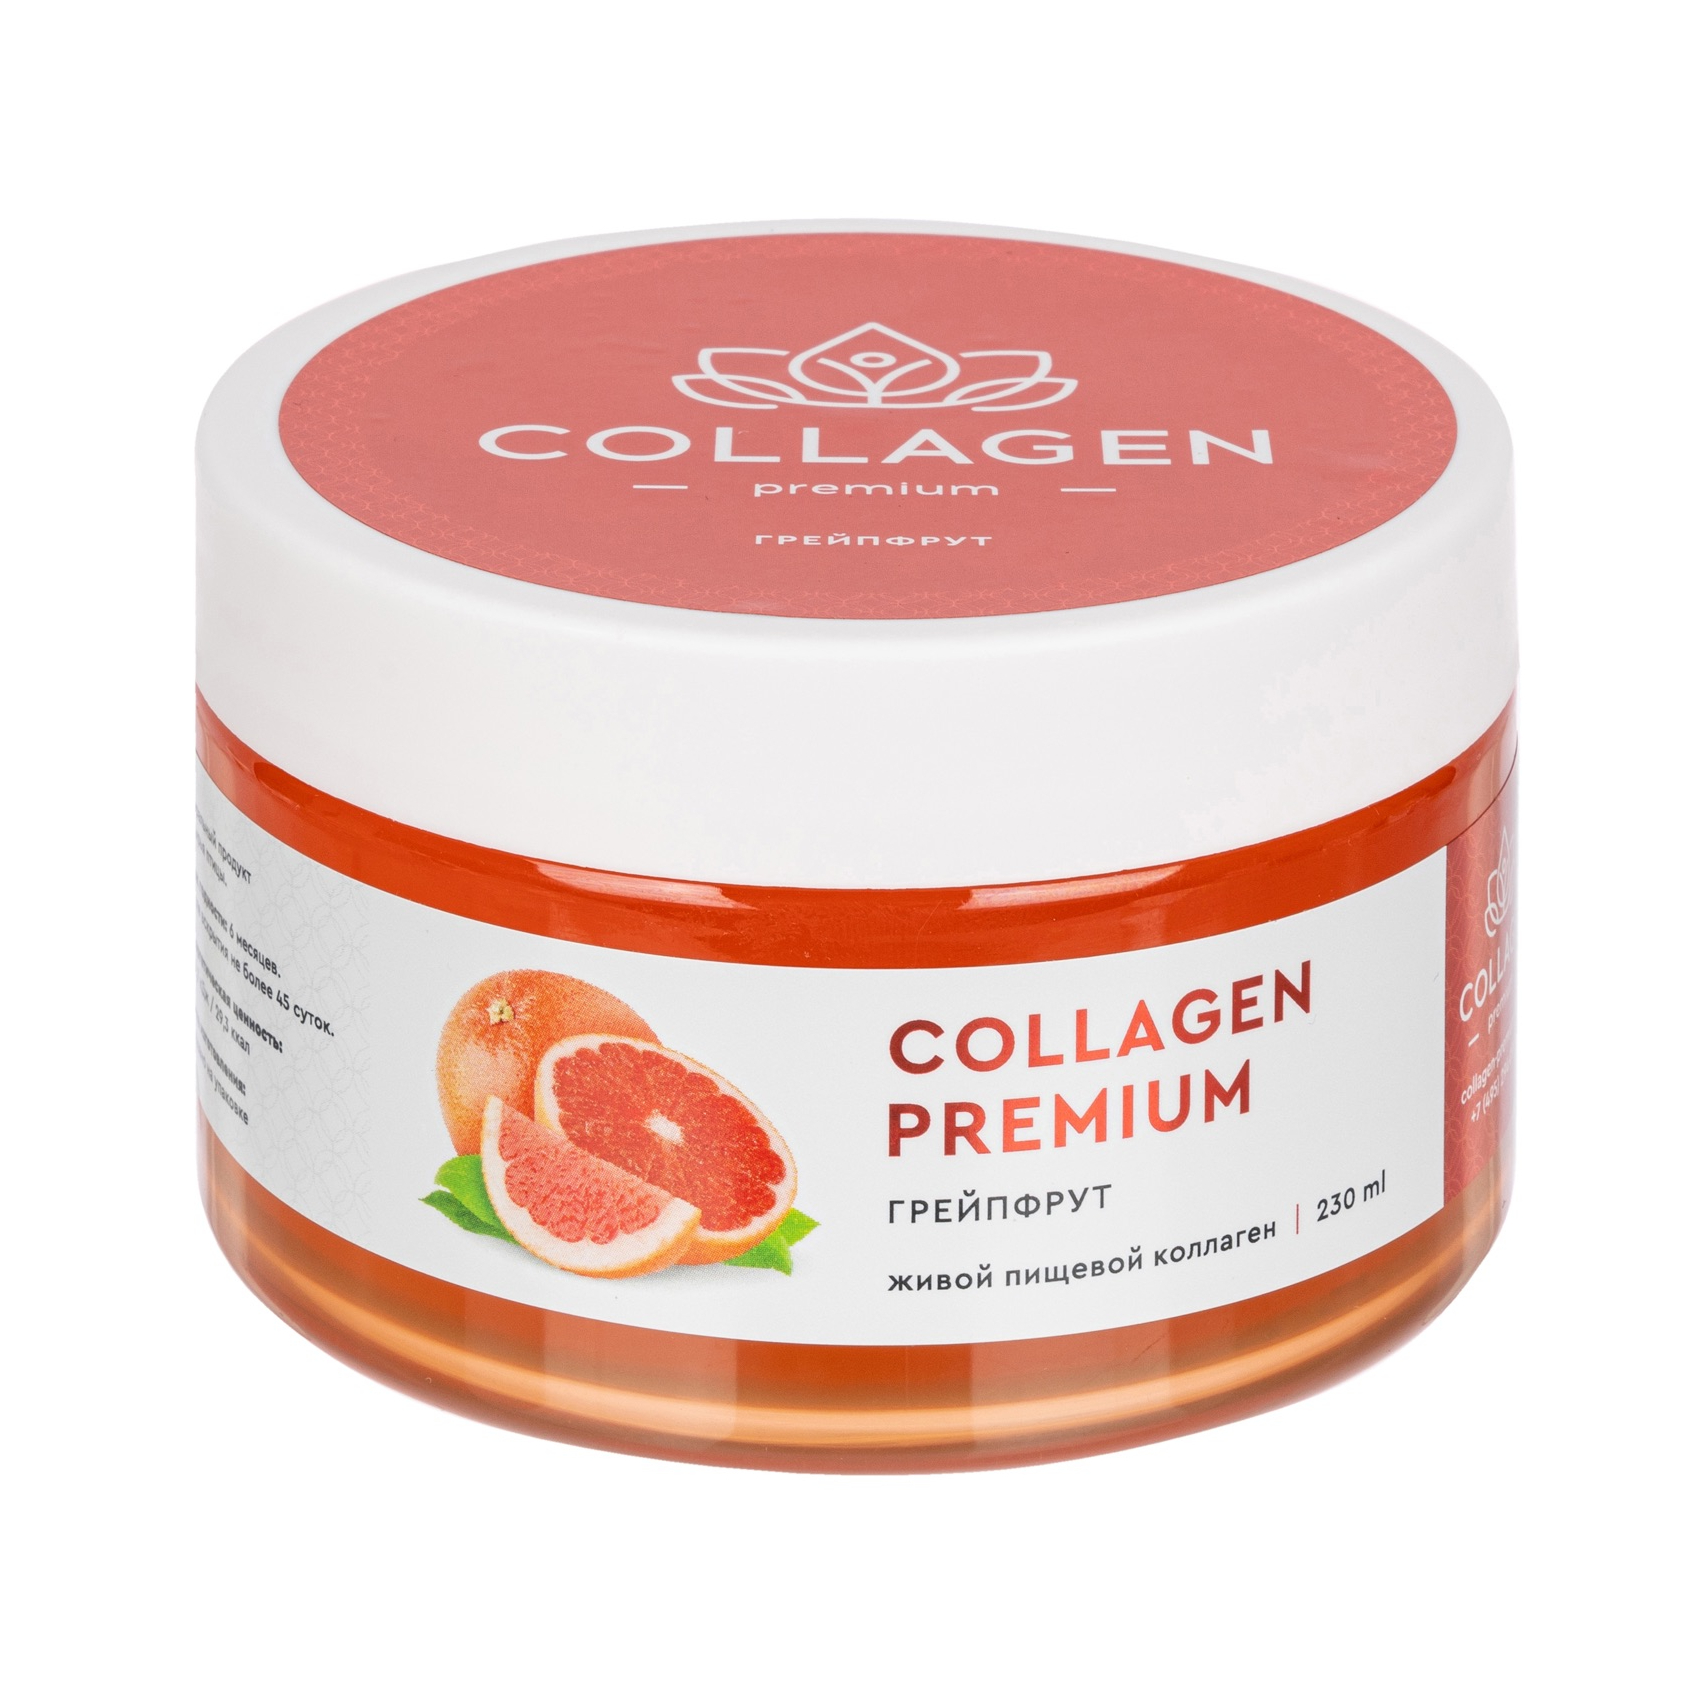 Коллаген Collagen Premium жевательный пищевой желе грейпфрут 230г